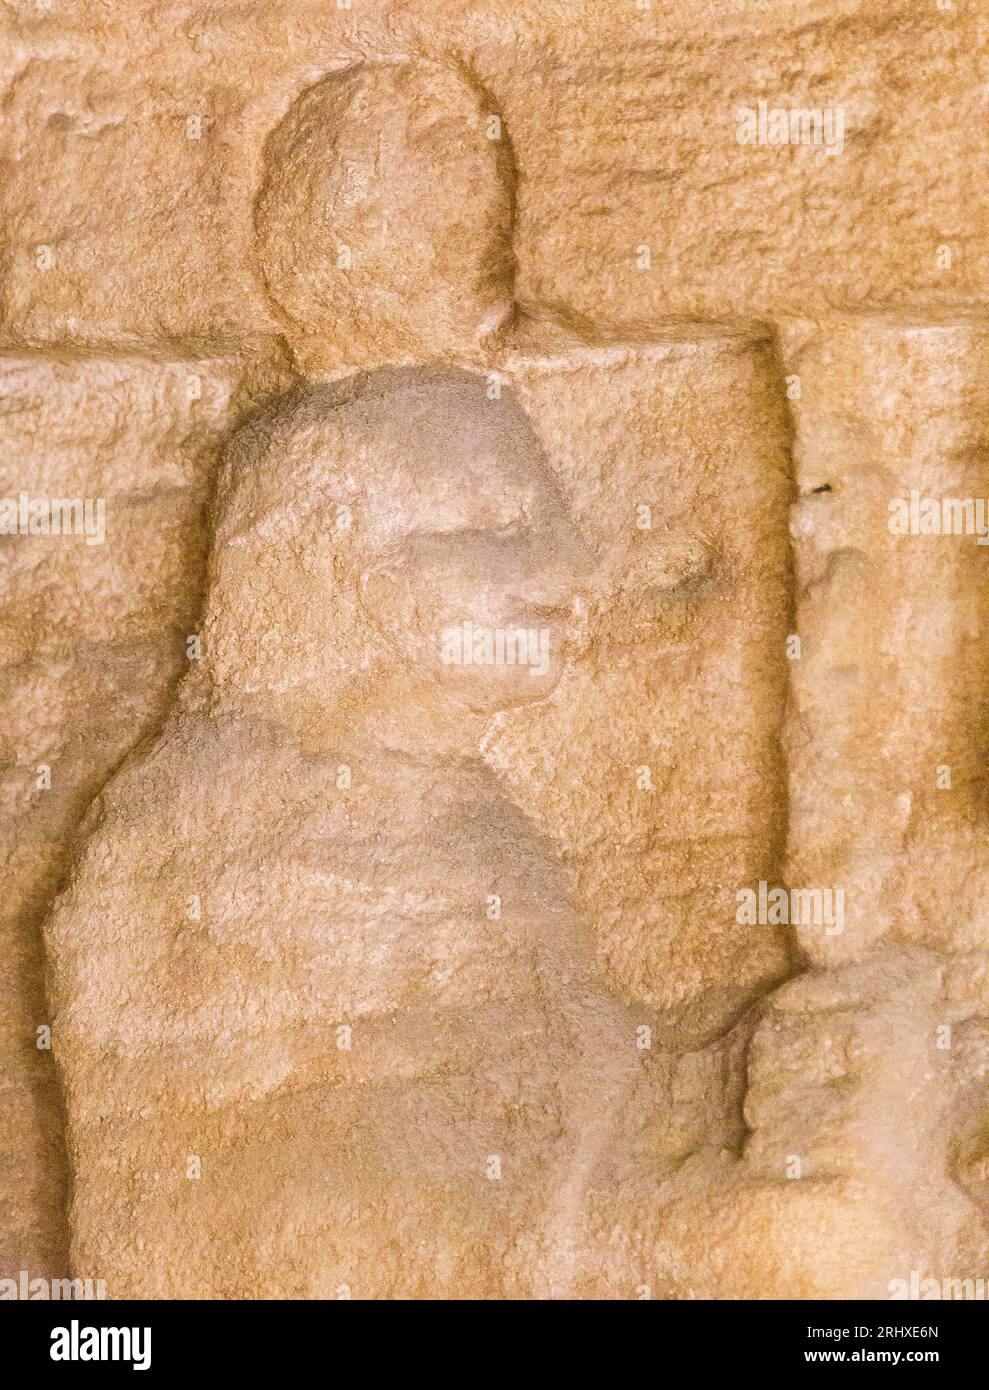 KOM el Shogafa Nekropolis, Hauptgrab, Hauptraum, rechte Nische, rechte Szene: Eine solare Mumie, vielleicht ein Sohn des Horus. Stockfoto